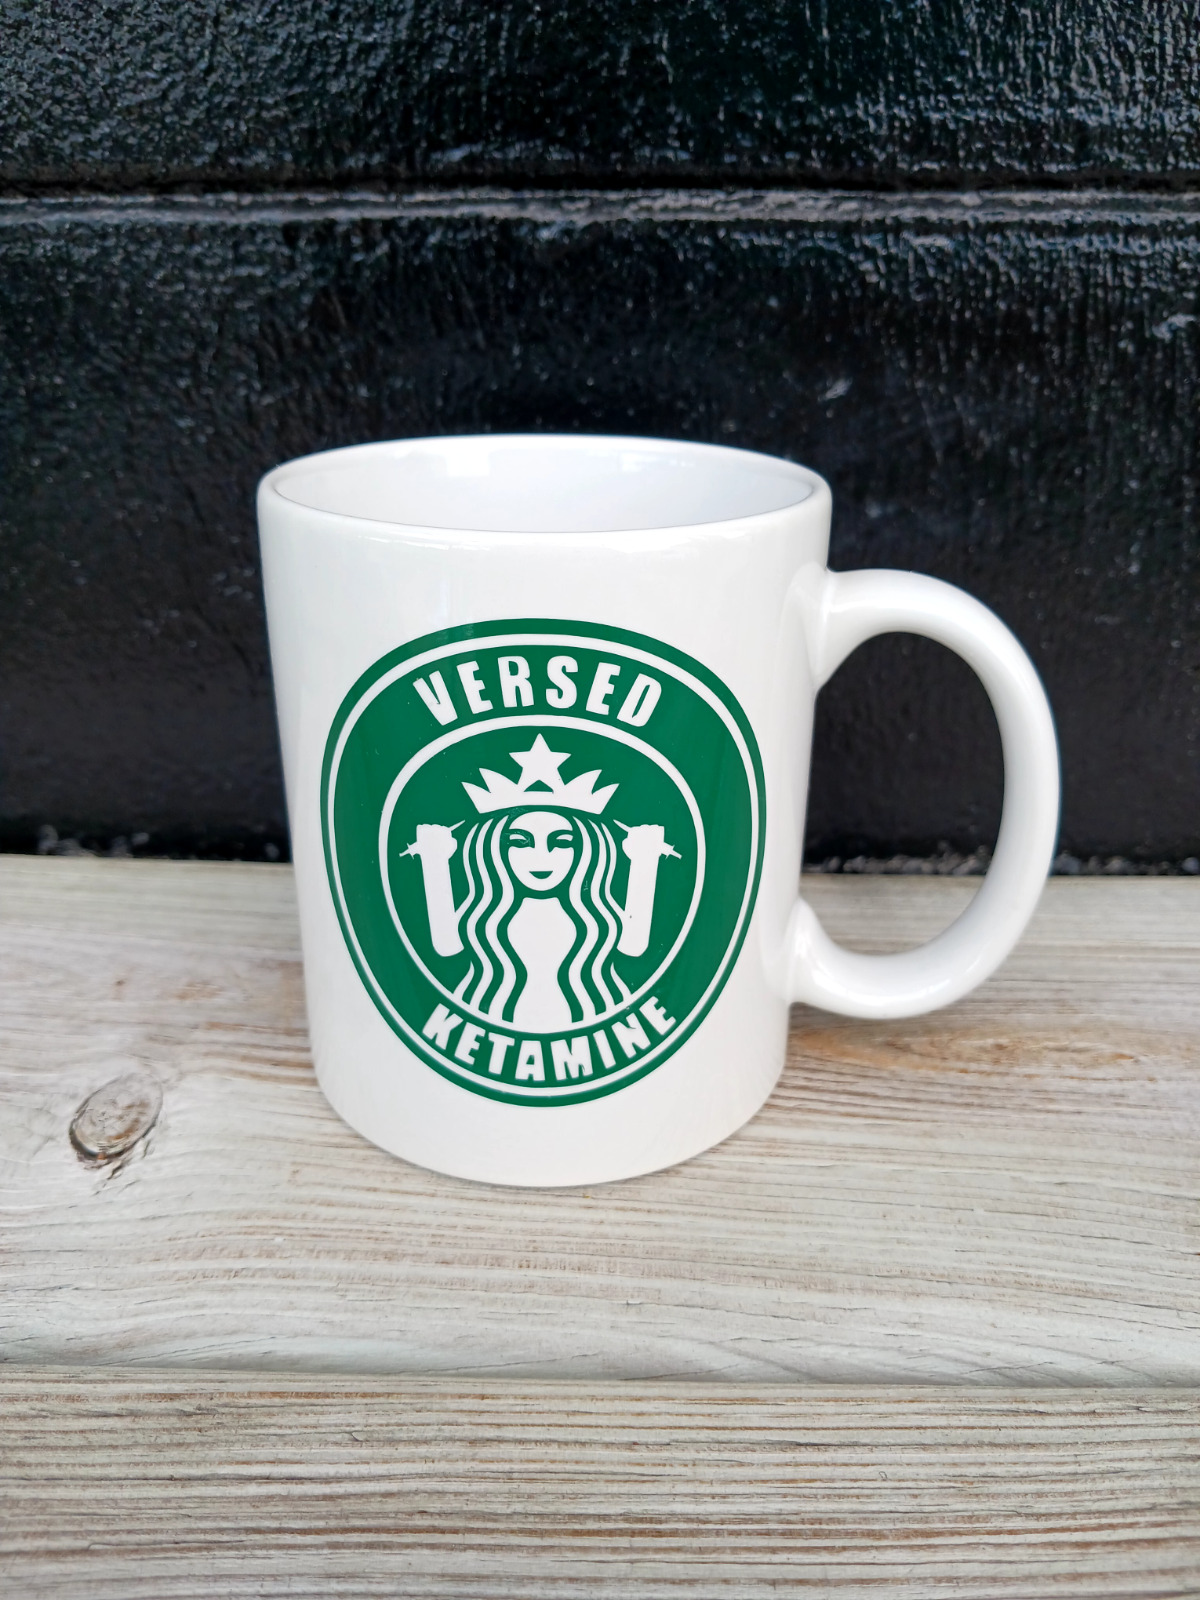 VERSED KETAMINE...Ceramic Coffee Tea Cup Mug